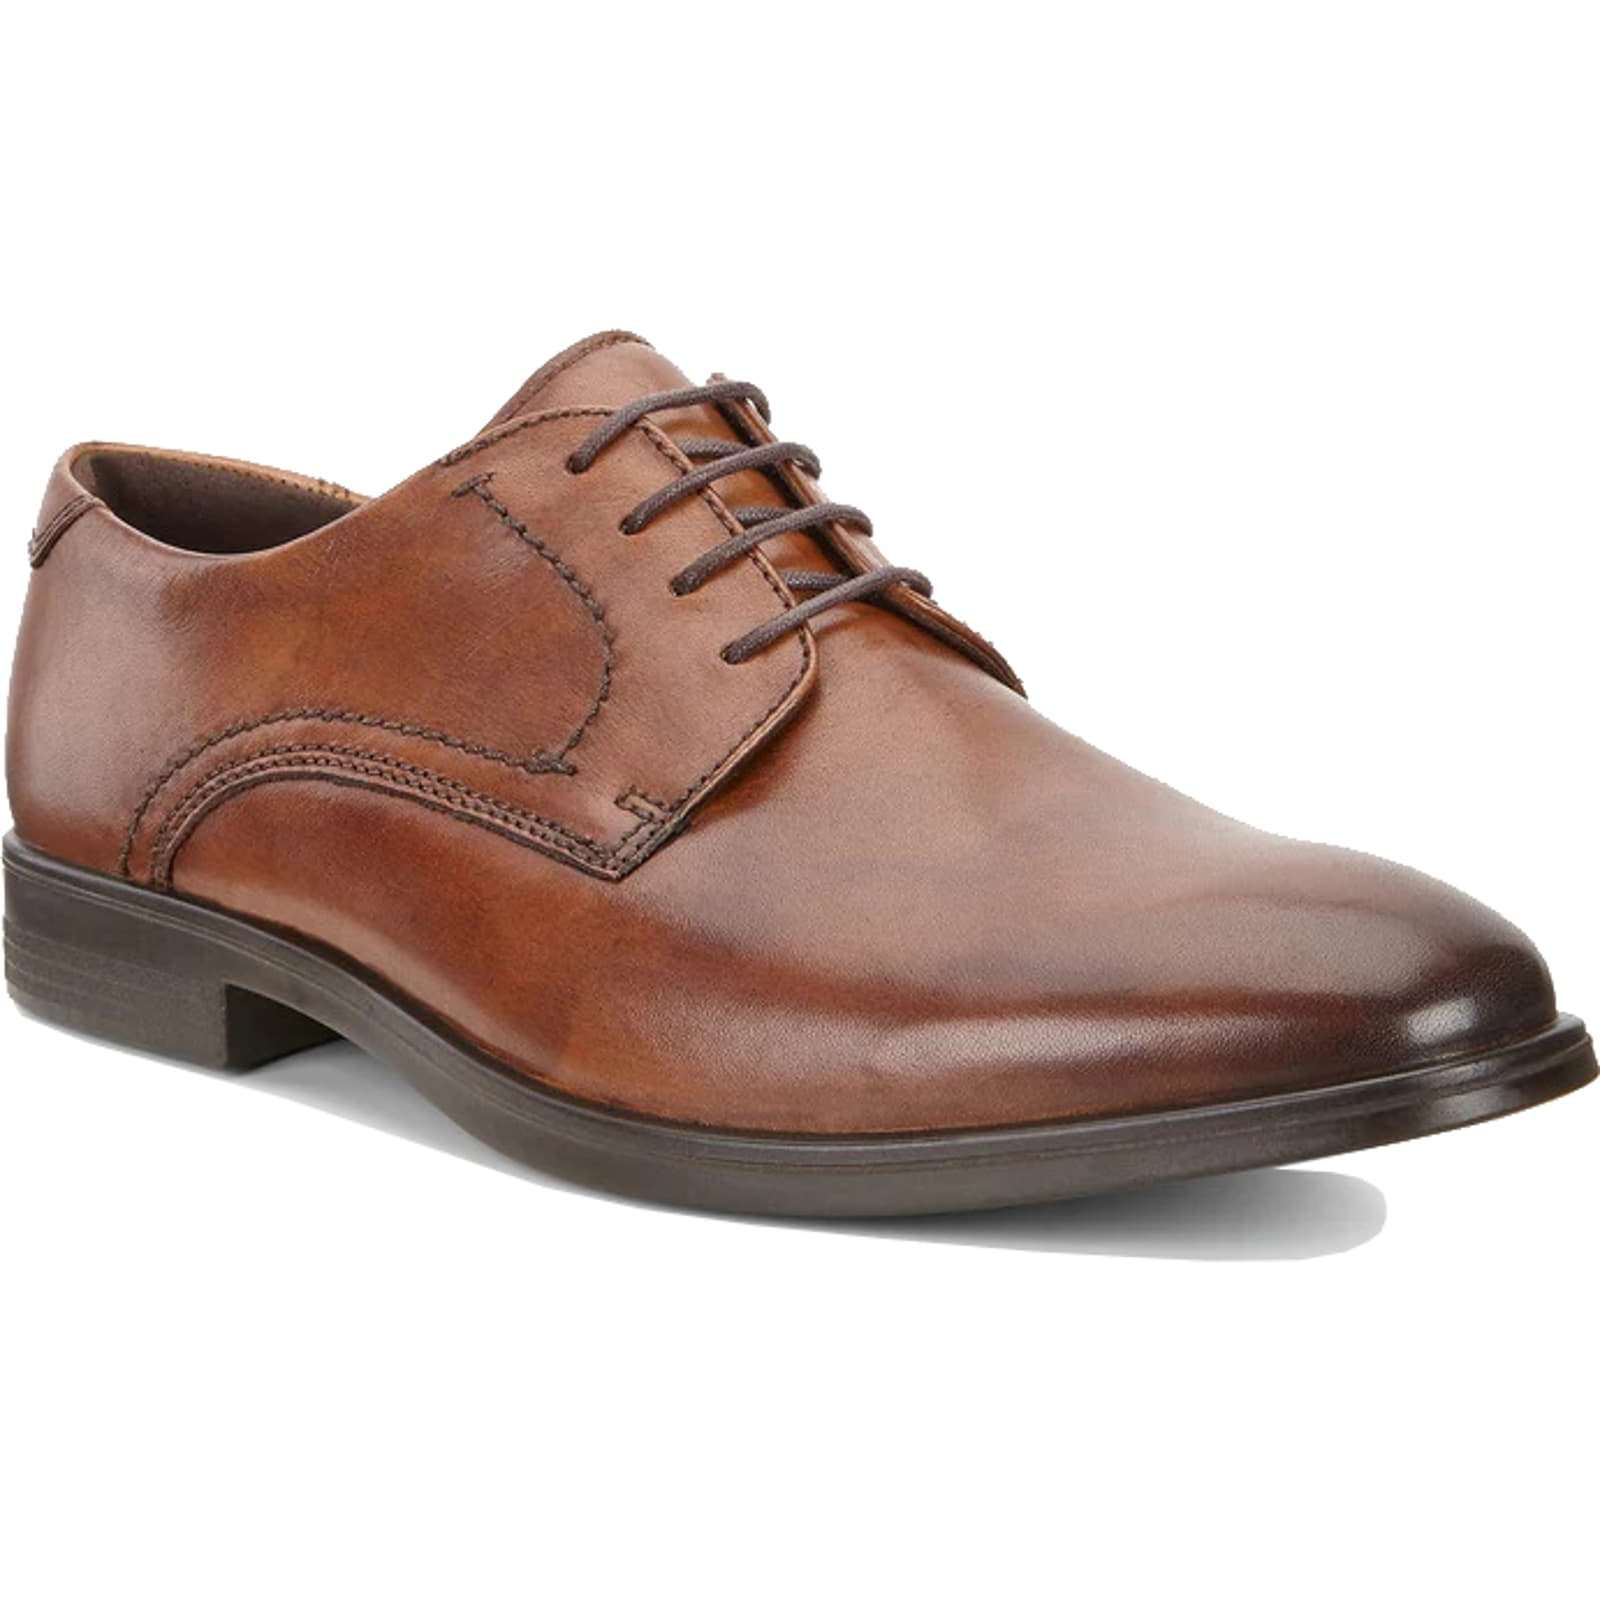 Ecco Melbourne Men's Shoes | Leather Derby Shoes Oxford Shoes - UK 9-9.5 / EU 43